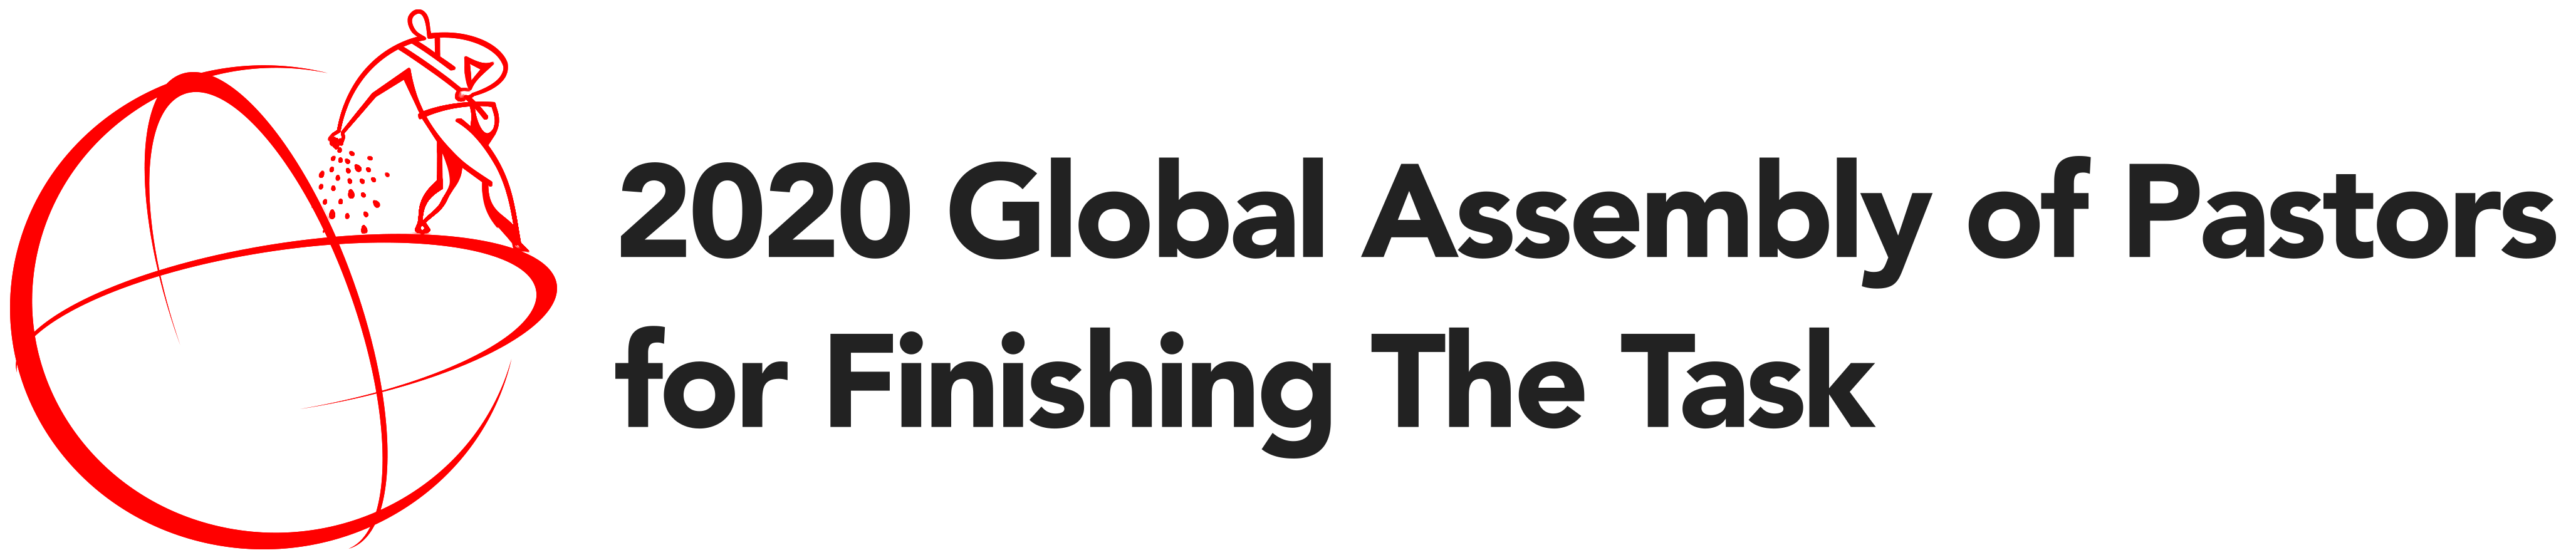 Global Assistance Partner logo